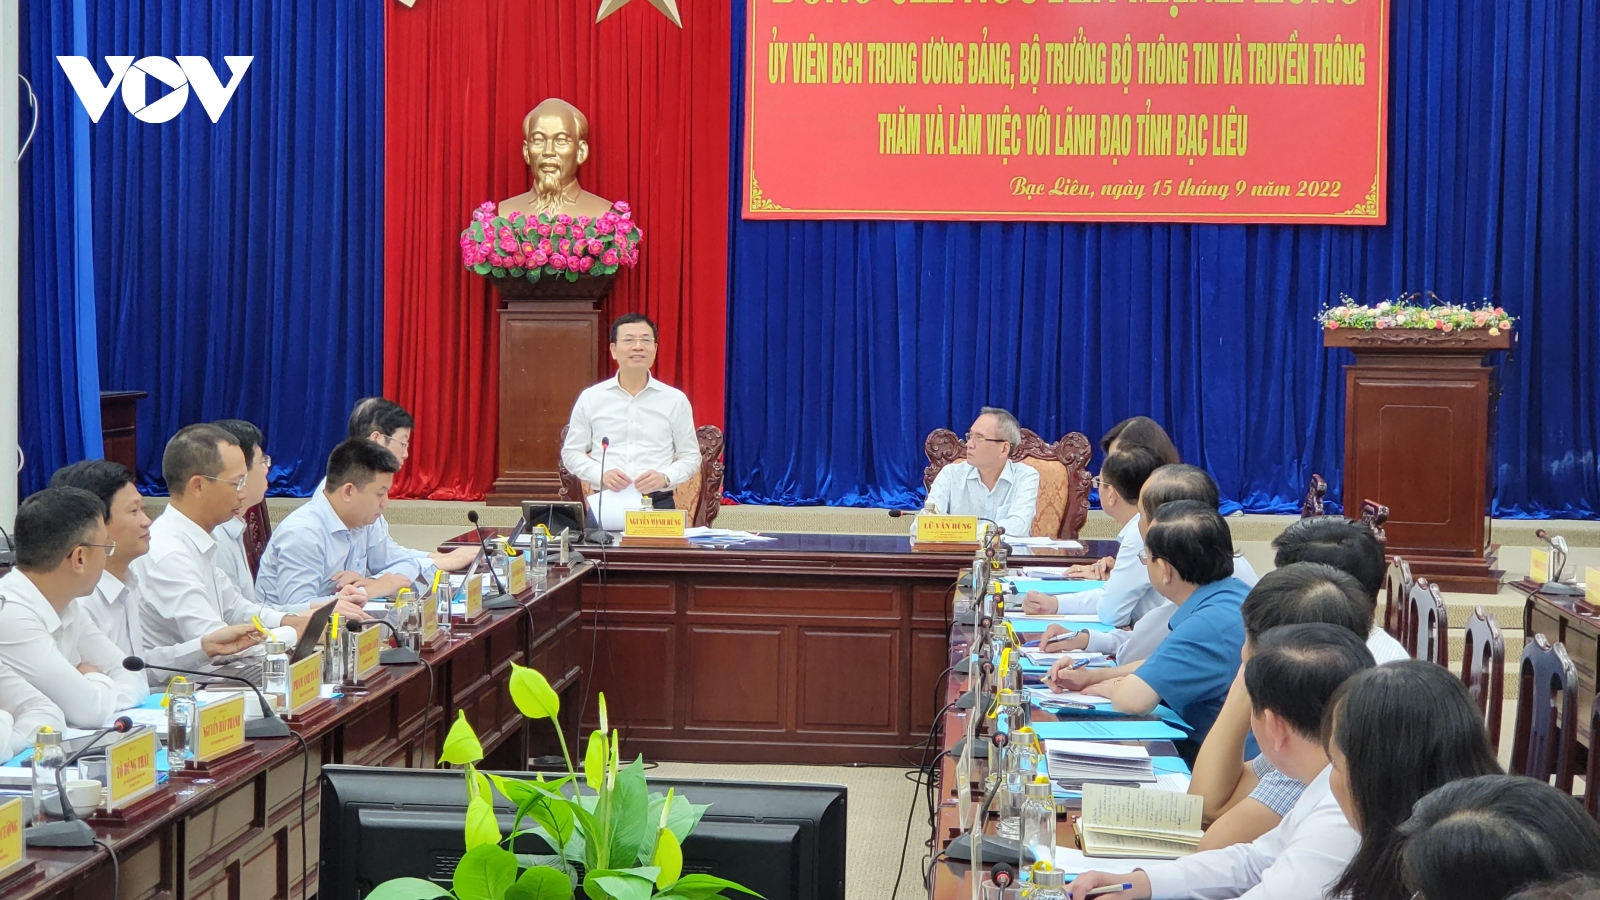 Bộ trưởng Bộ Thông tin và Truyền thông làm việc tại tỉnh Bạc Liêu